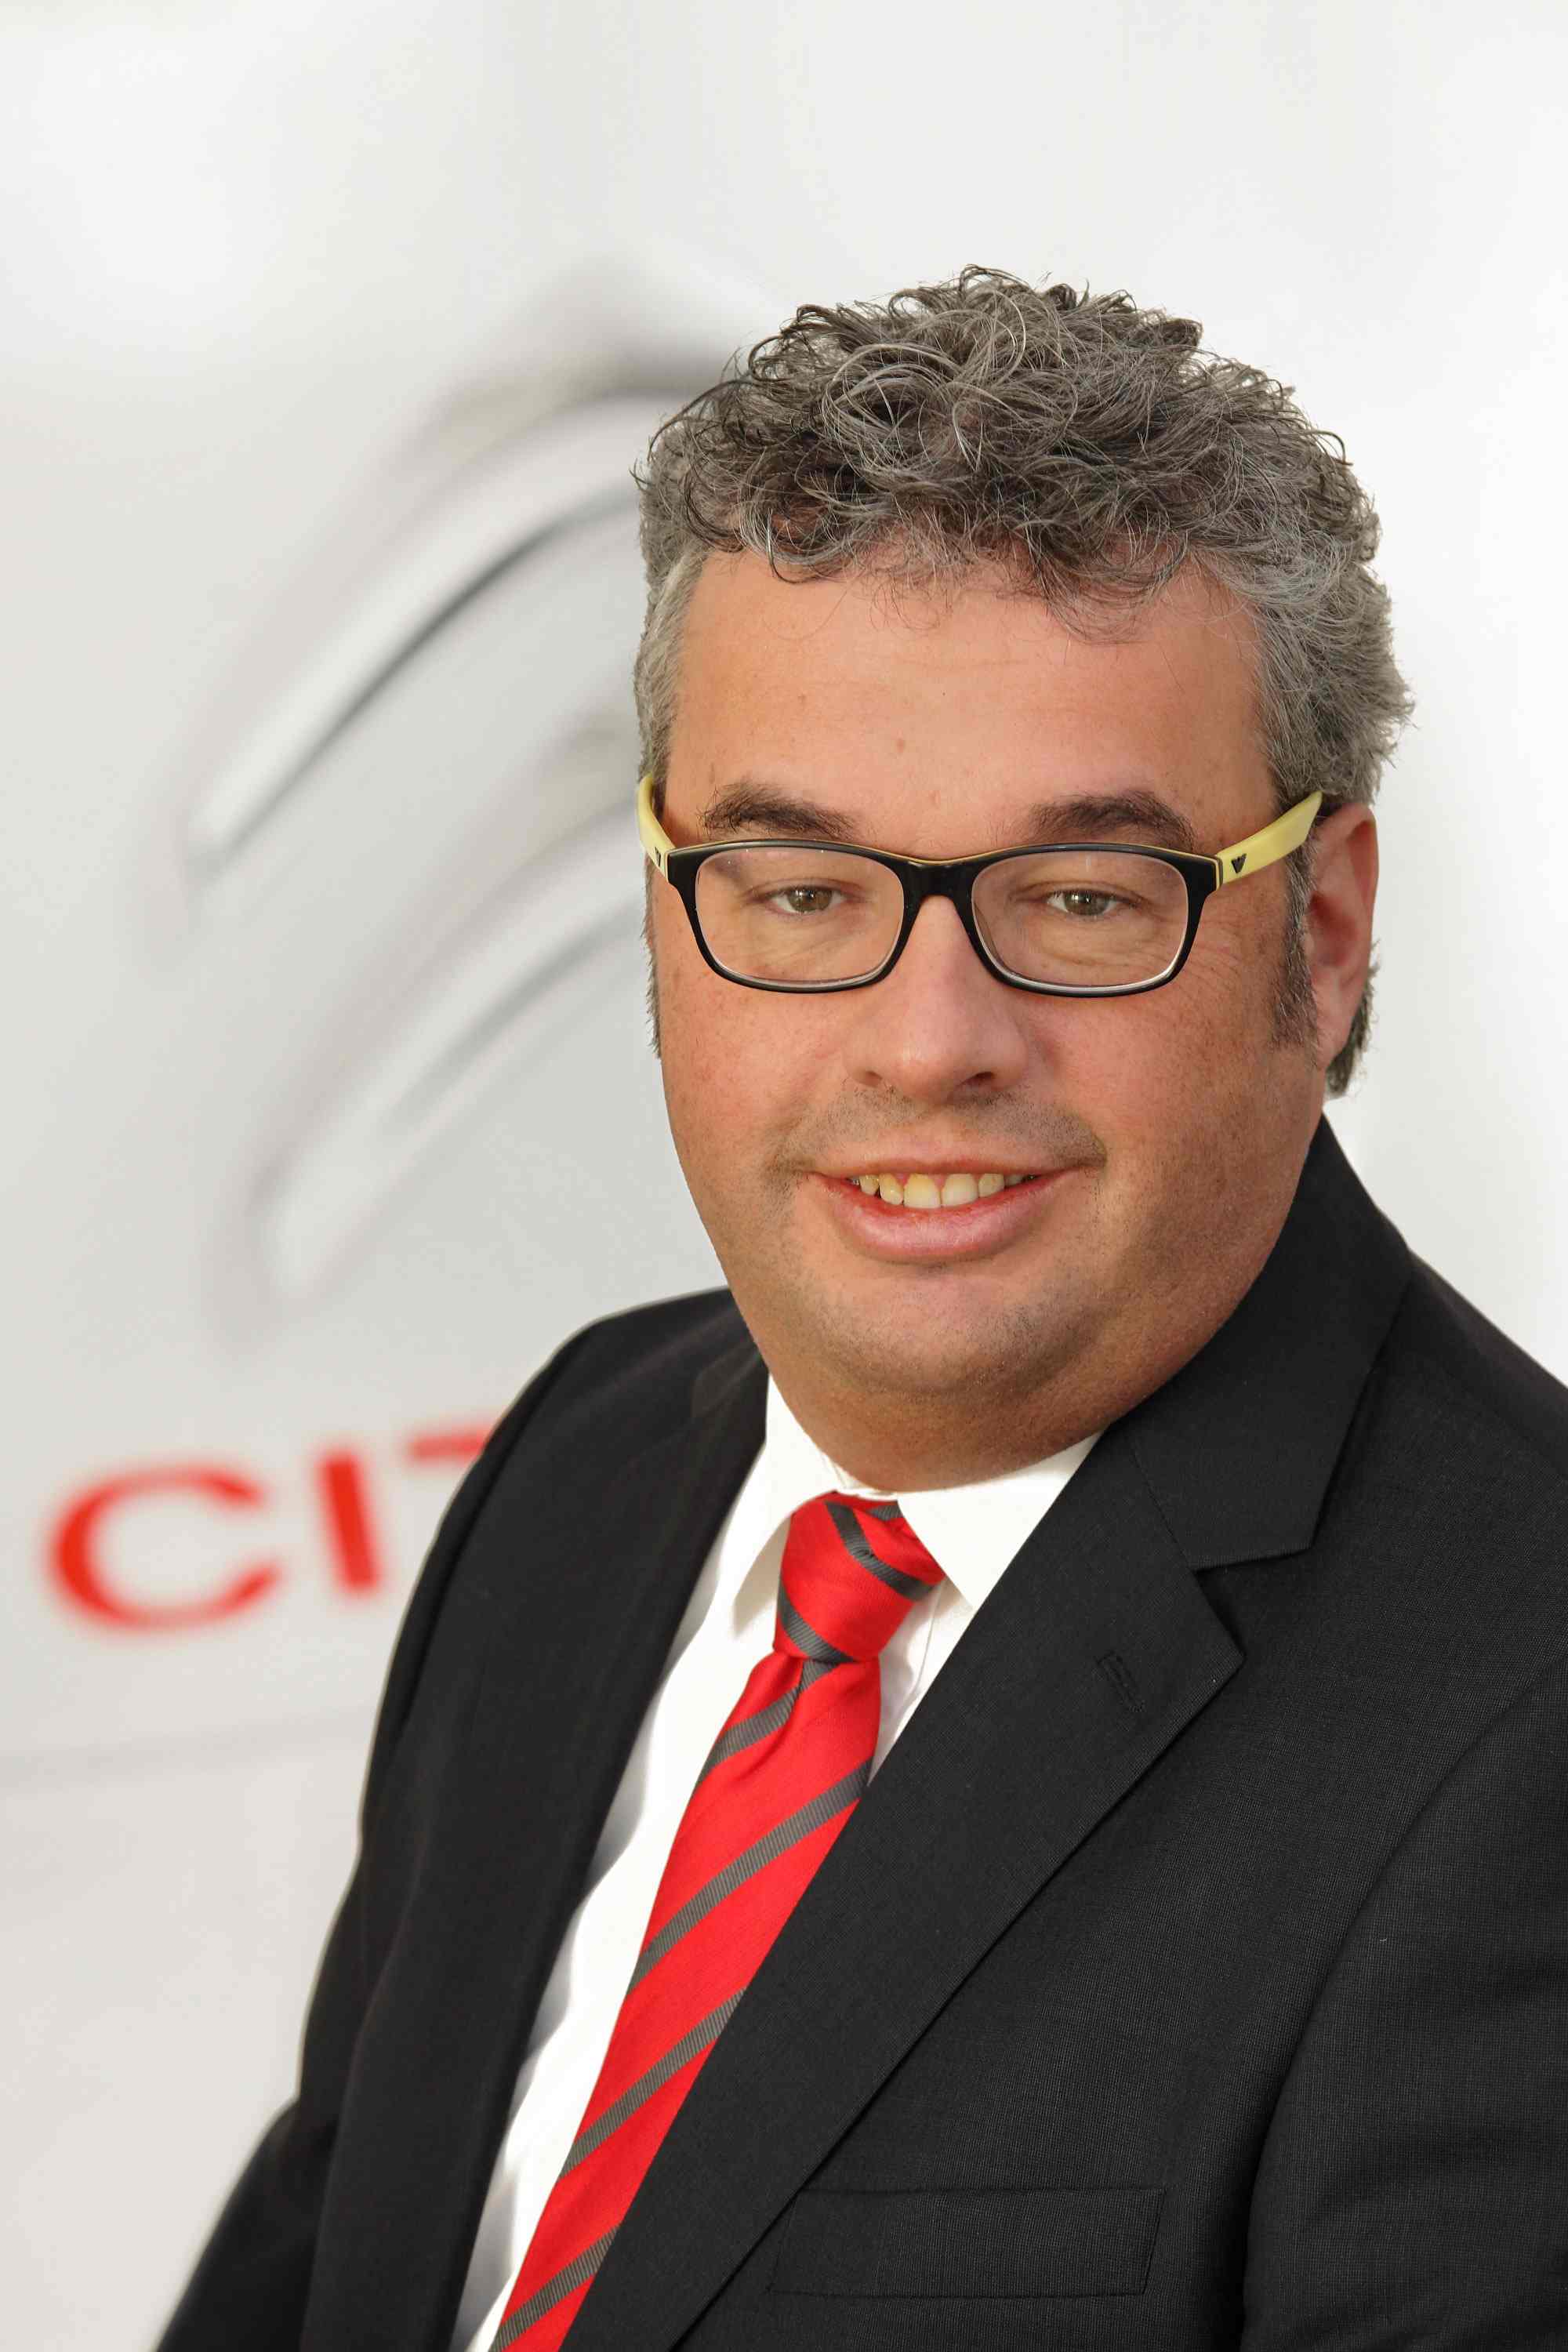 Bernd Große Holtforth ist seit dem 1. Januar 2012 bei der Citroën Deutschland GmbH als Koordinator Nutzfahrzeuge/Sonderfahrzeuge tätig. - citroen-grosseholt